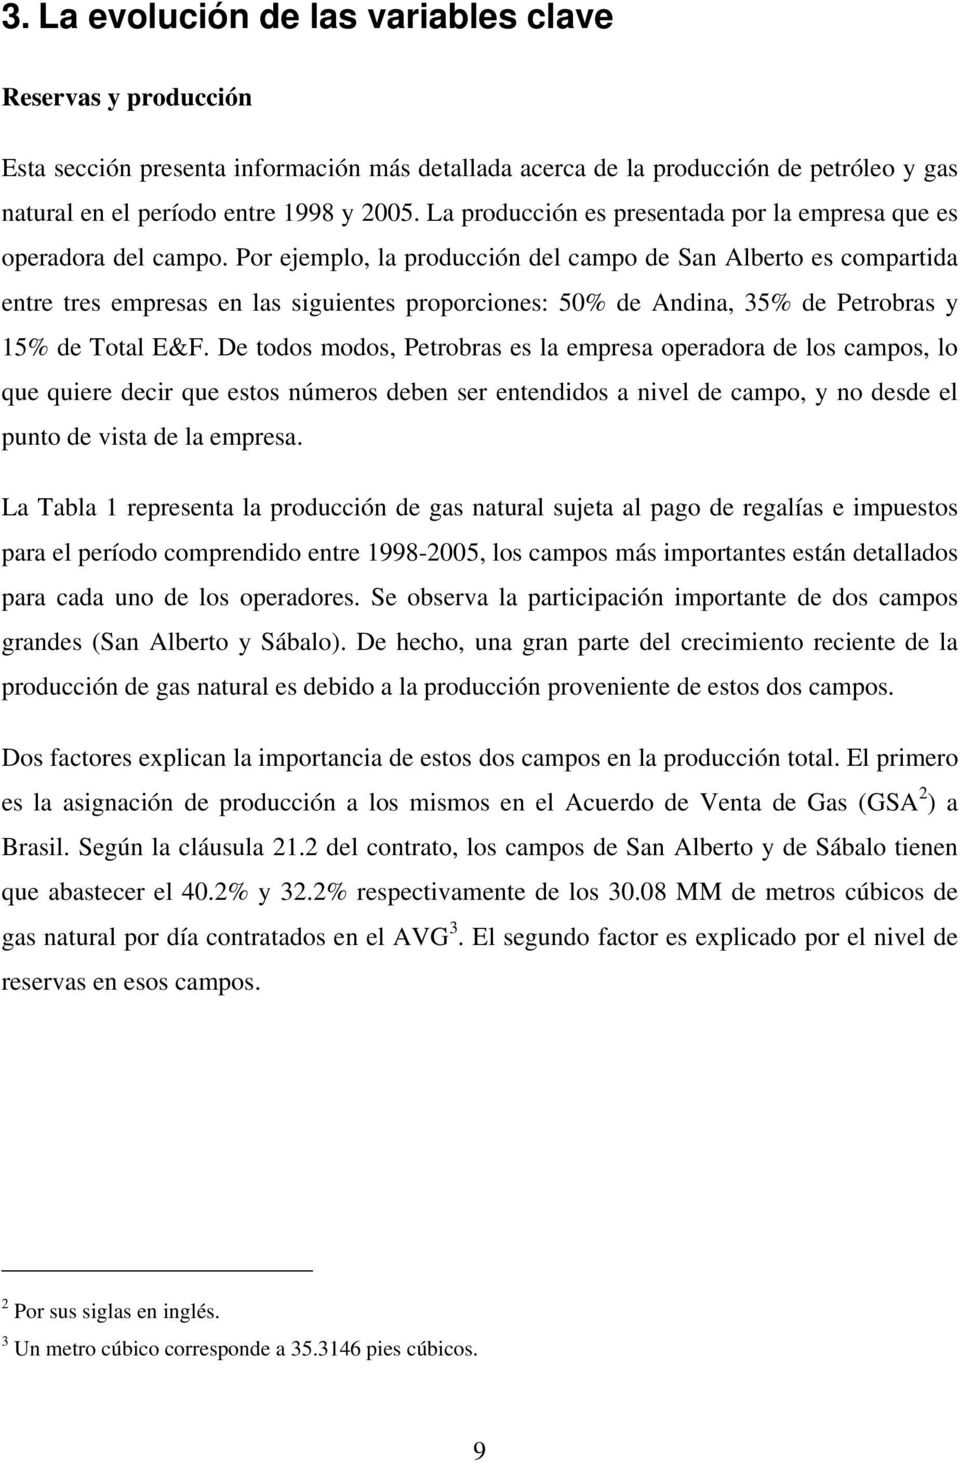 Por ejemplo, la producción del campo de San Alberto es compartida entre tres empresas en las siguientes proporciones: 50% de Andina, 35% de Petrobras y 15% de Total E&F.